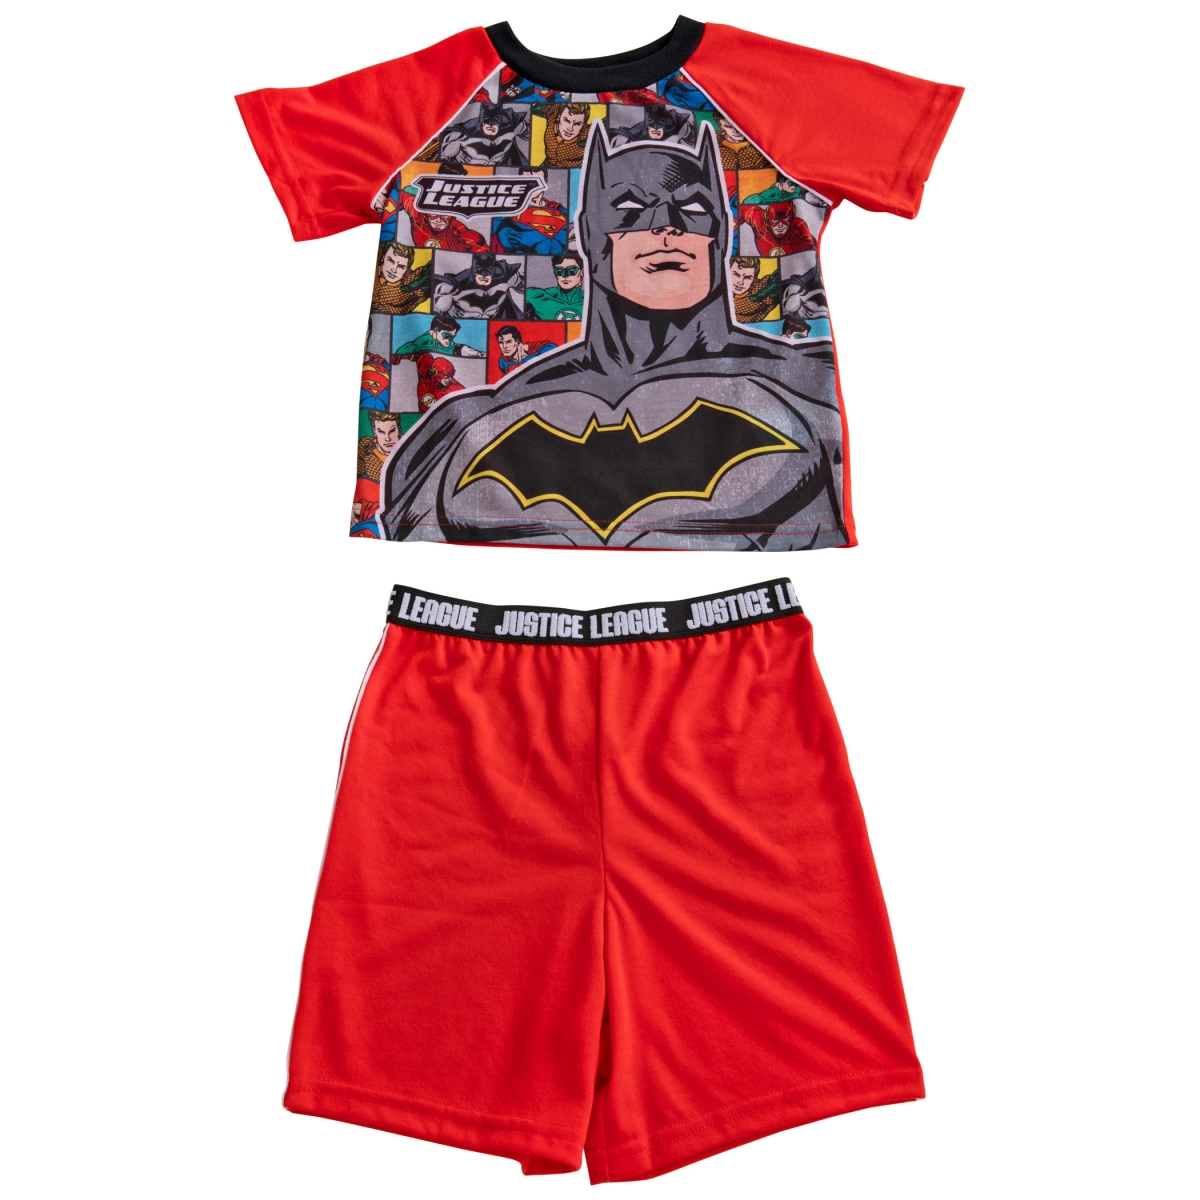 Picture of Batman 830398-size10 Batman & The Justice League Pajama Shirt & Shorts Set - Size 10